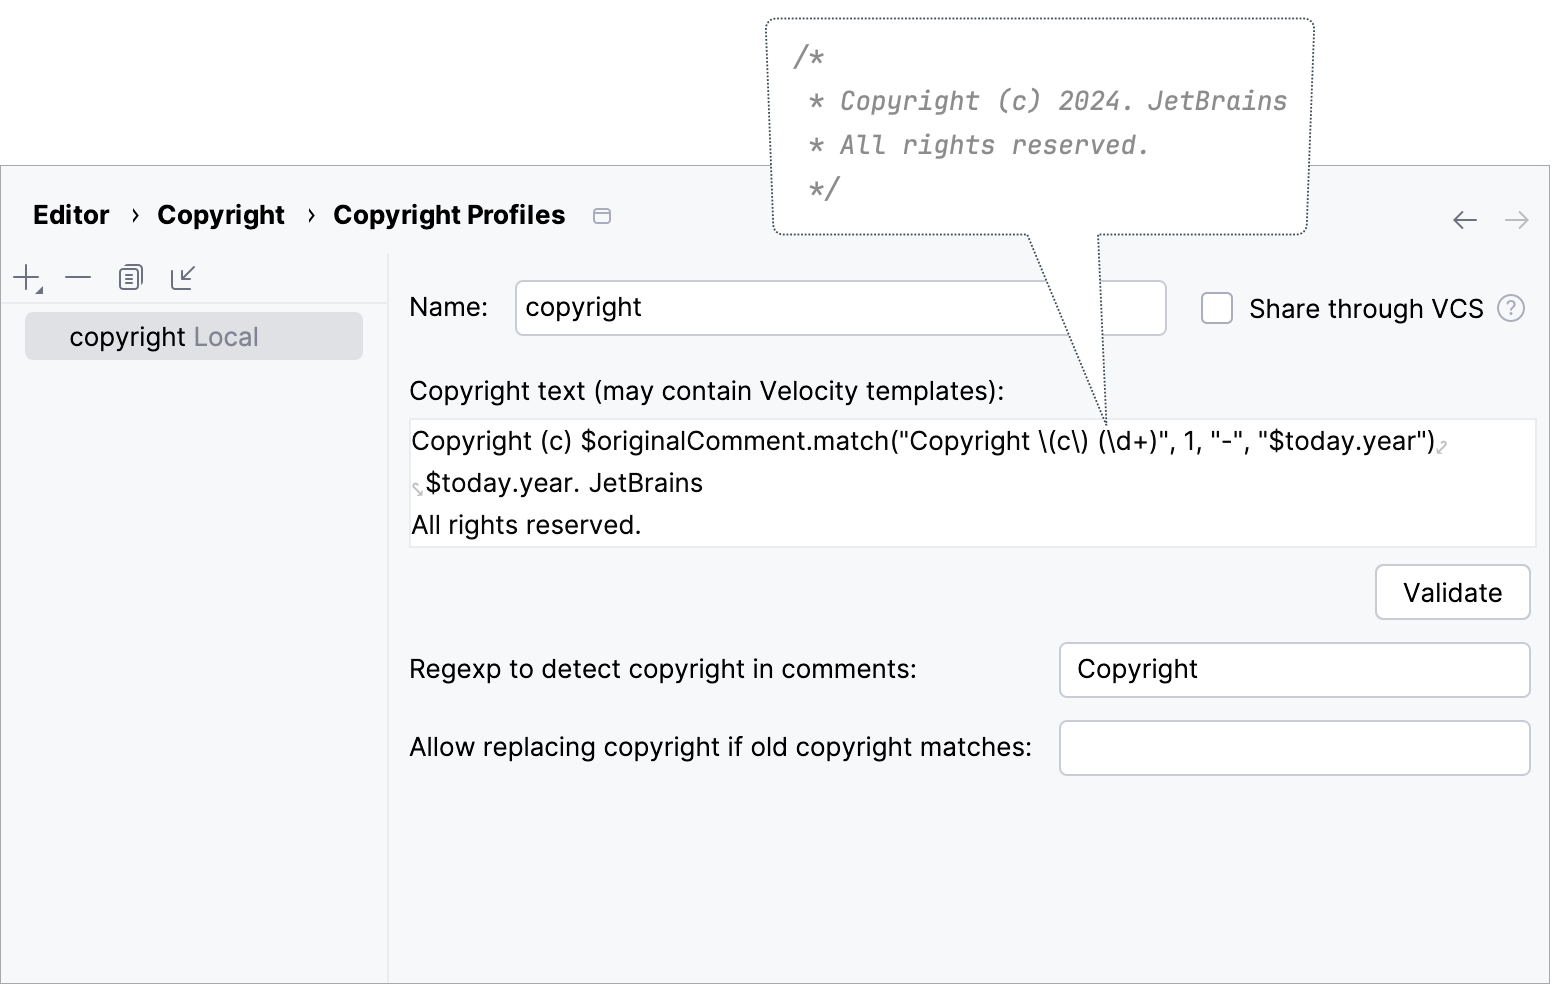 Configuring a copyright profile